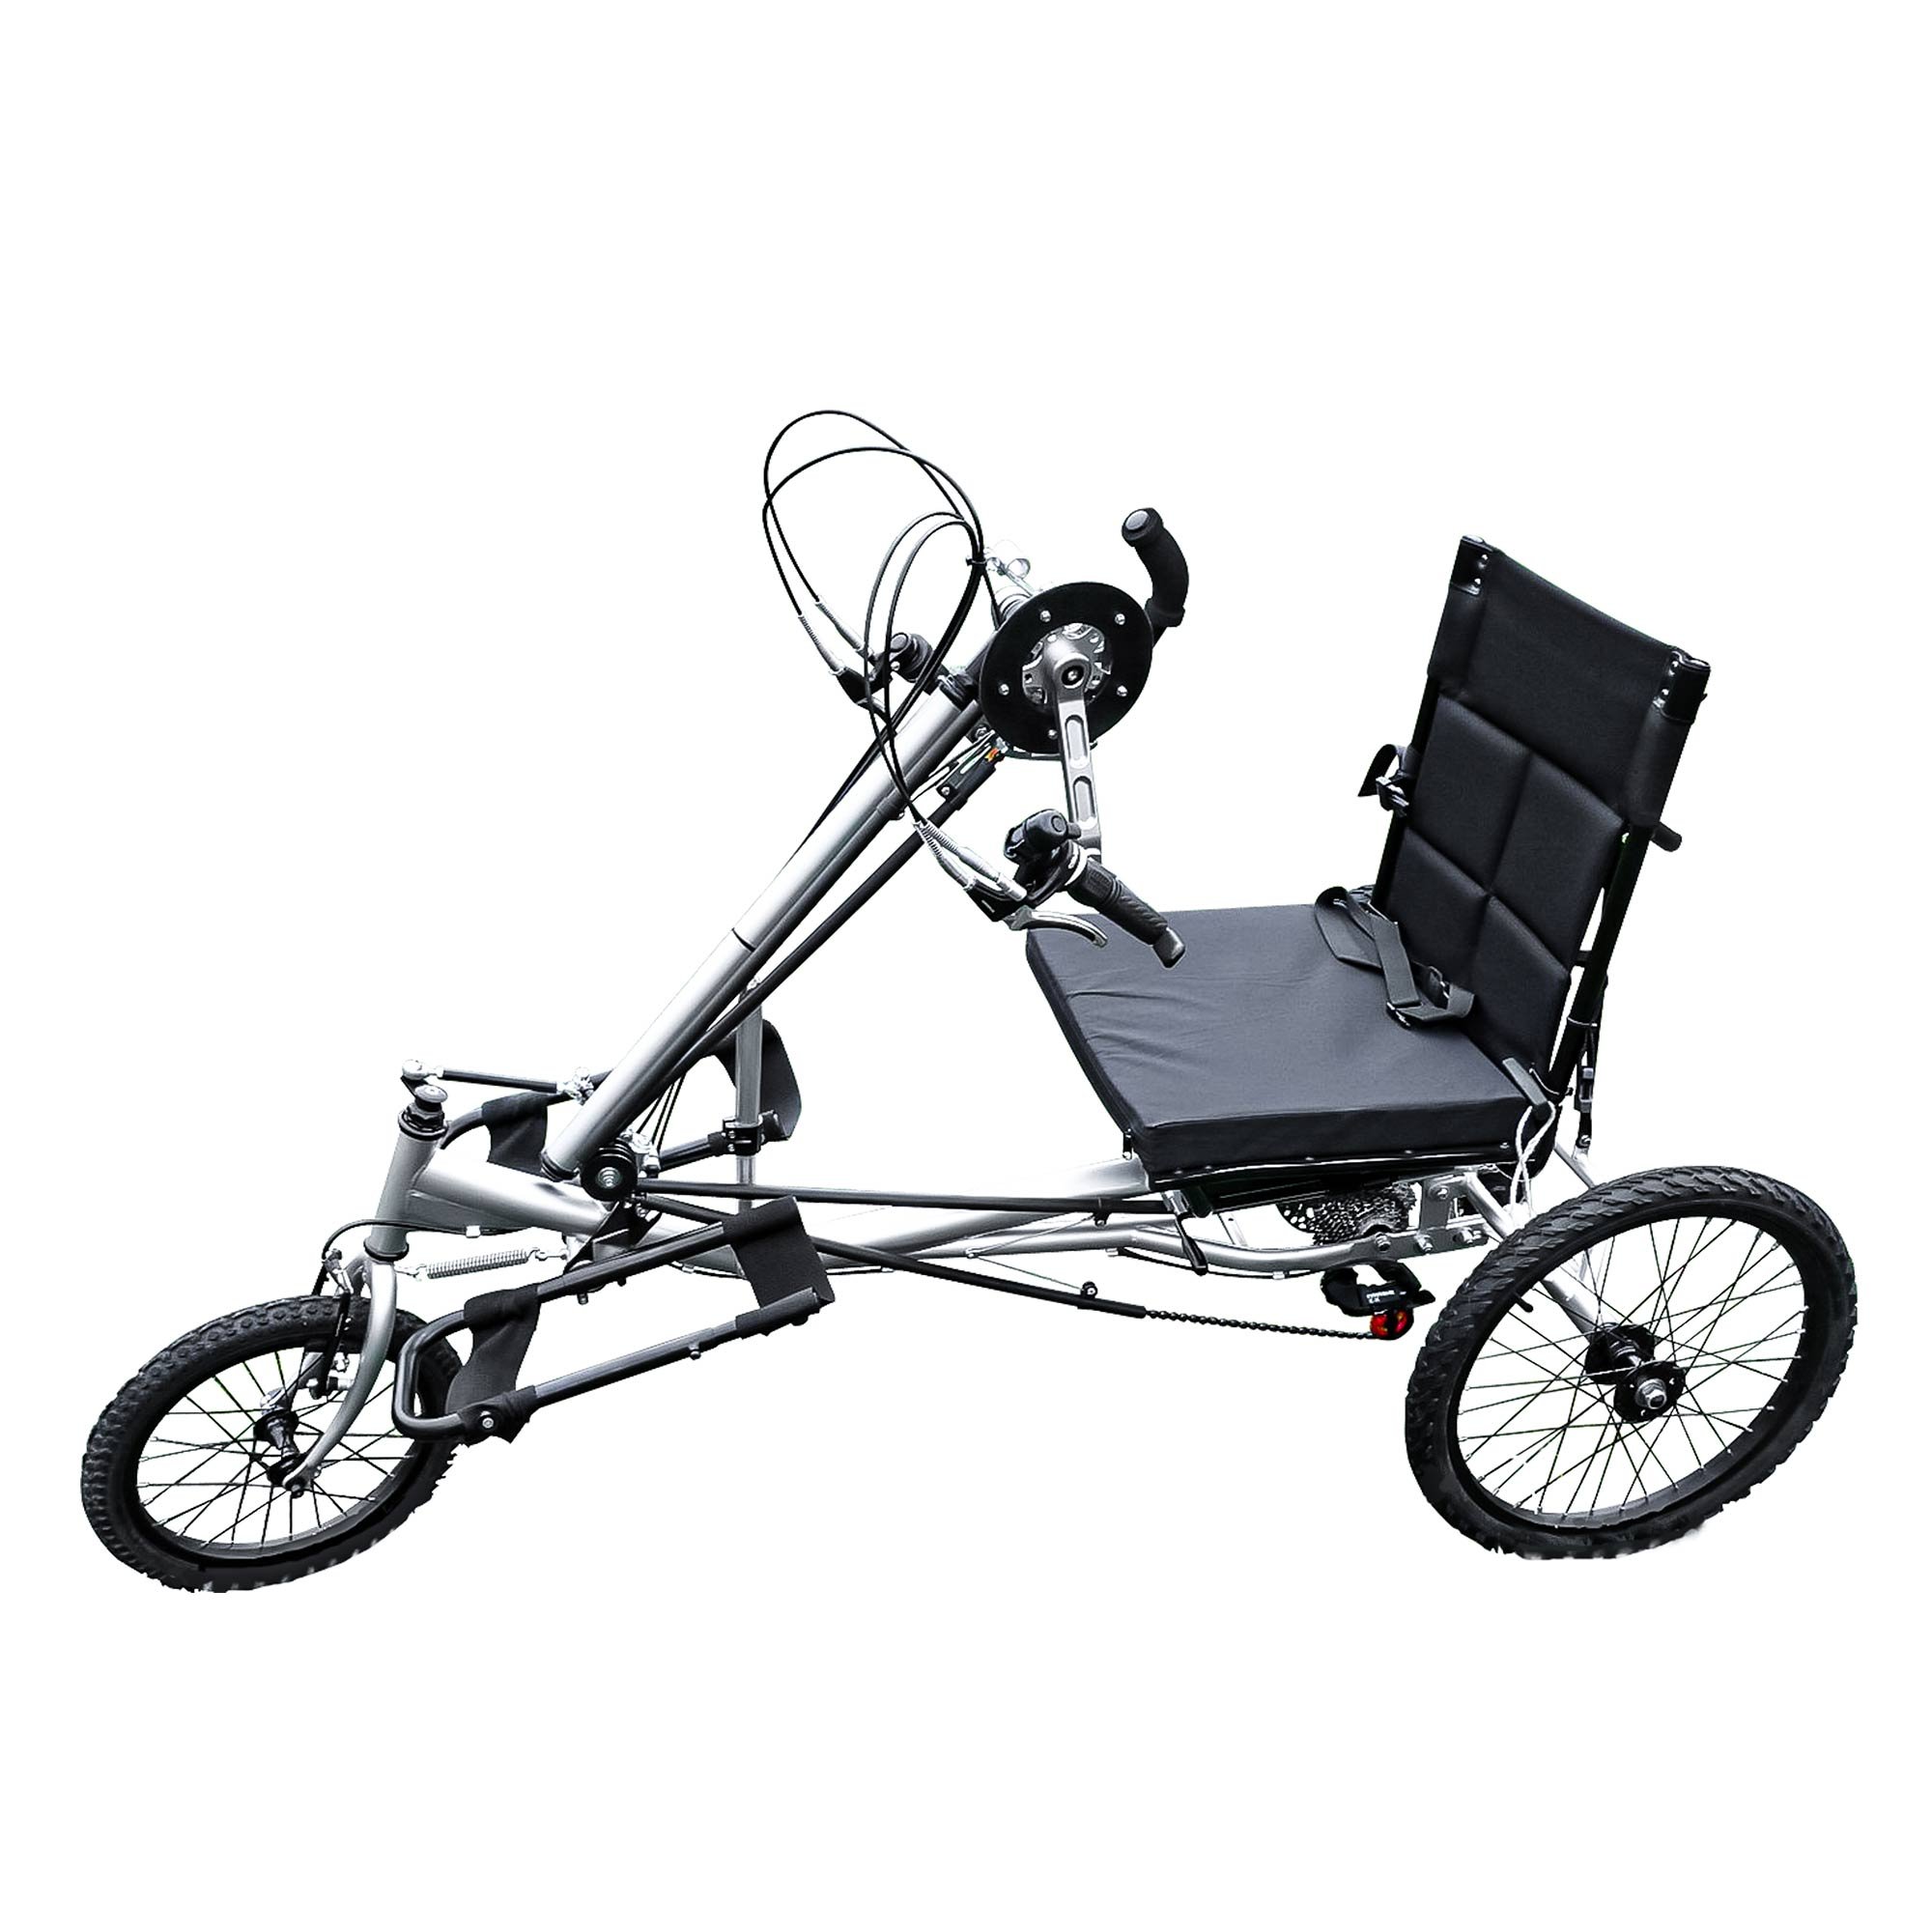 Купить ручной велосипед. Хэндбайк для инвалидной коляски. Инвалидная велоколяска ММВЗ. Handbike 4х-колесный для инвалидов. Liliput трёхколёсный велосипед.